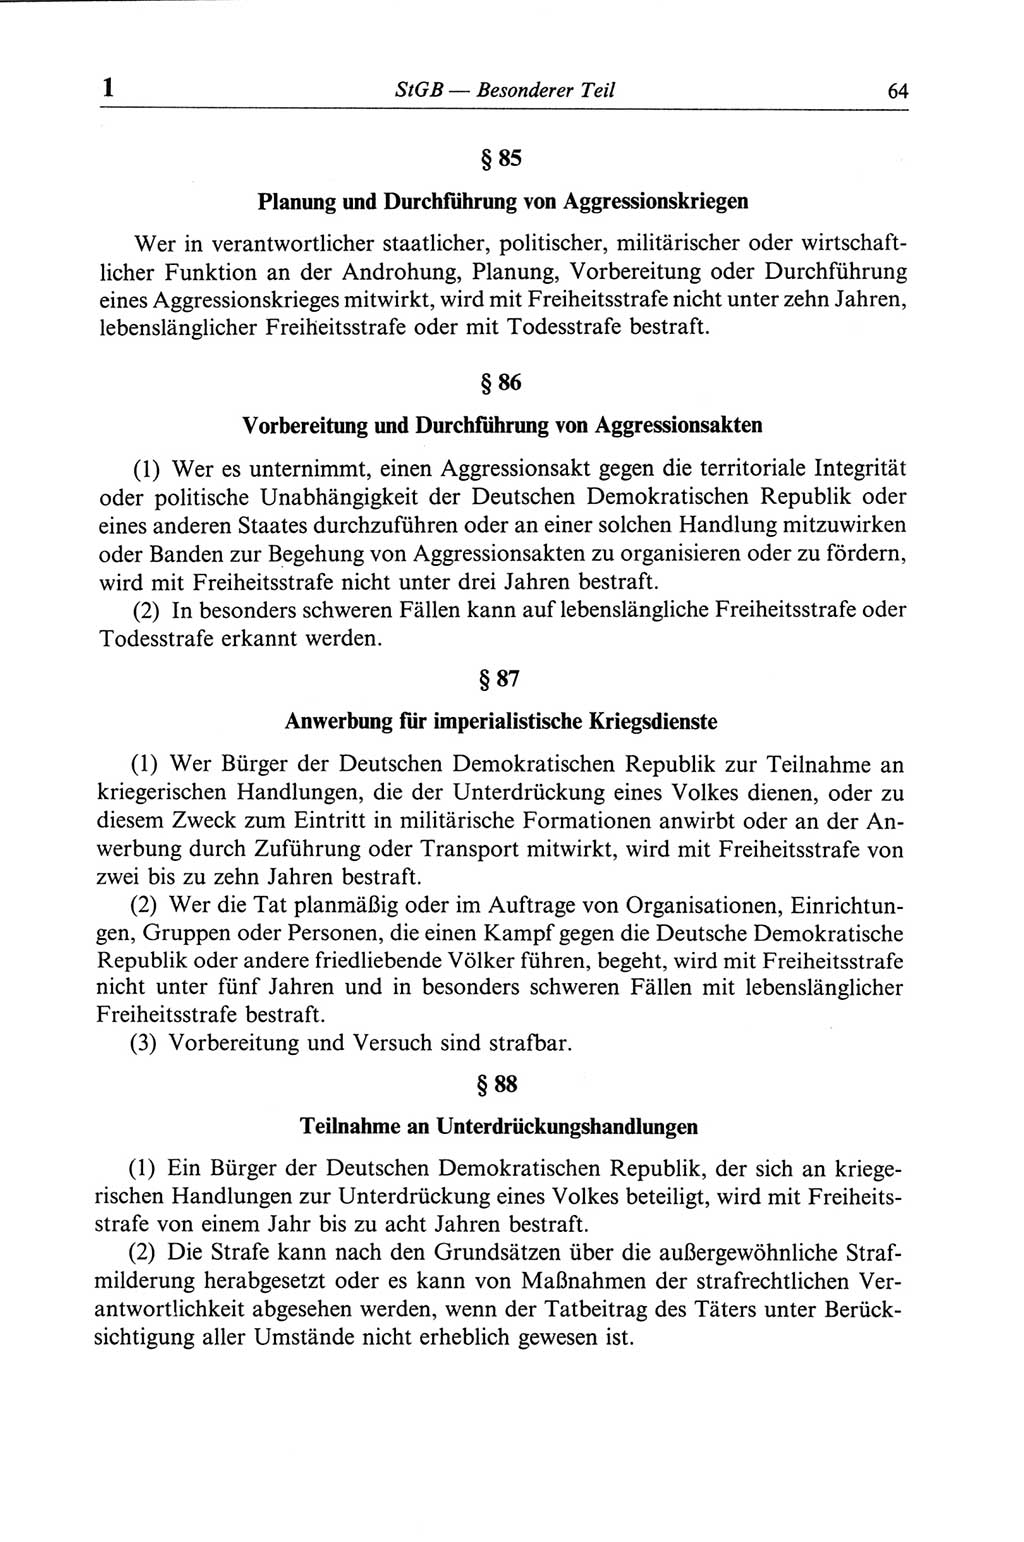 Strafgesetzbuch (StGB) der Deutschen Demokratischen Republik (DDR) und angrenzende Gesetze und Bestimmungen 1968, Seite 64 (StGB Ges. Best. DDR 1968, S. 64)